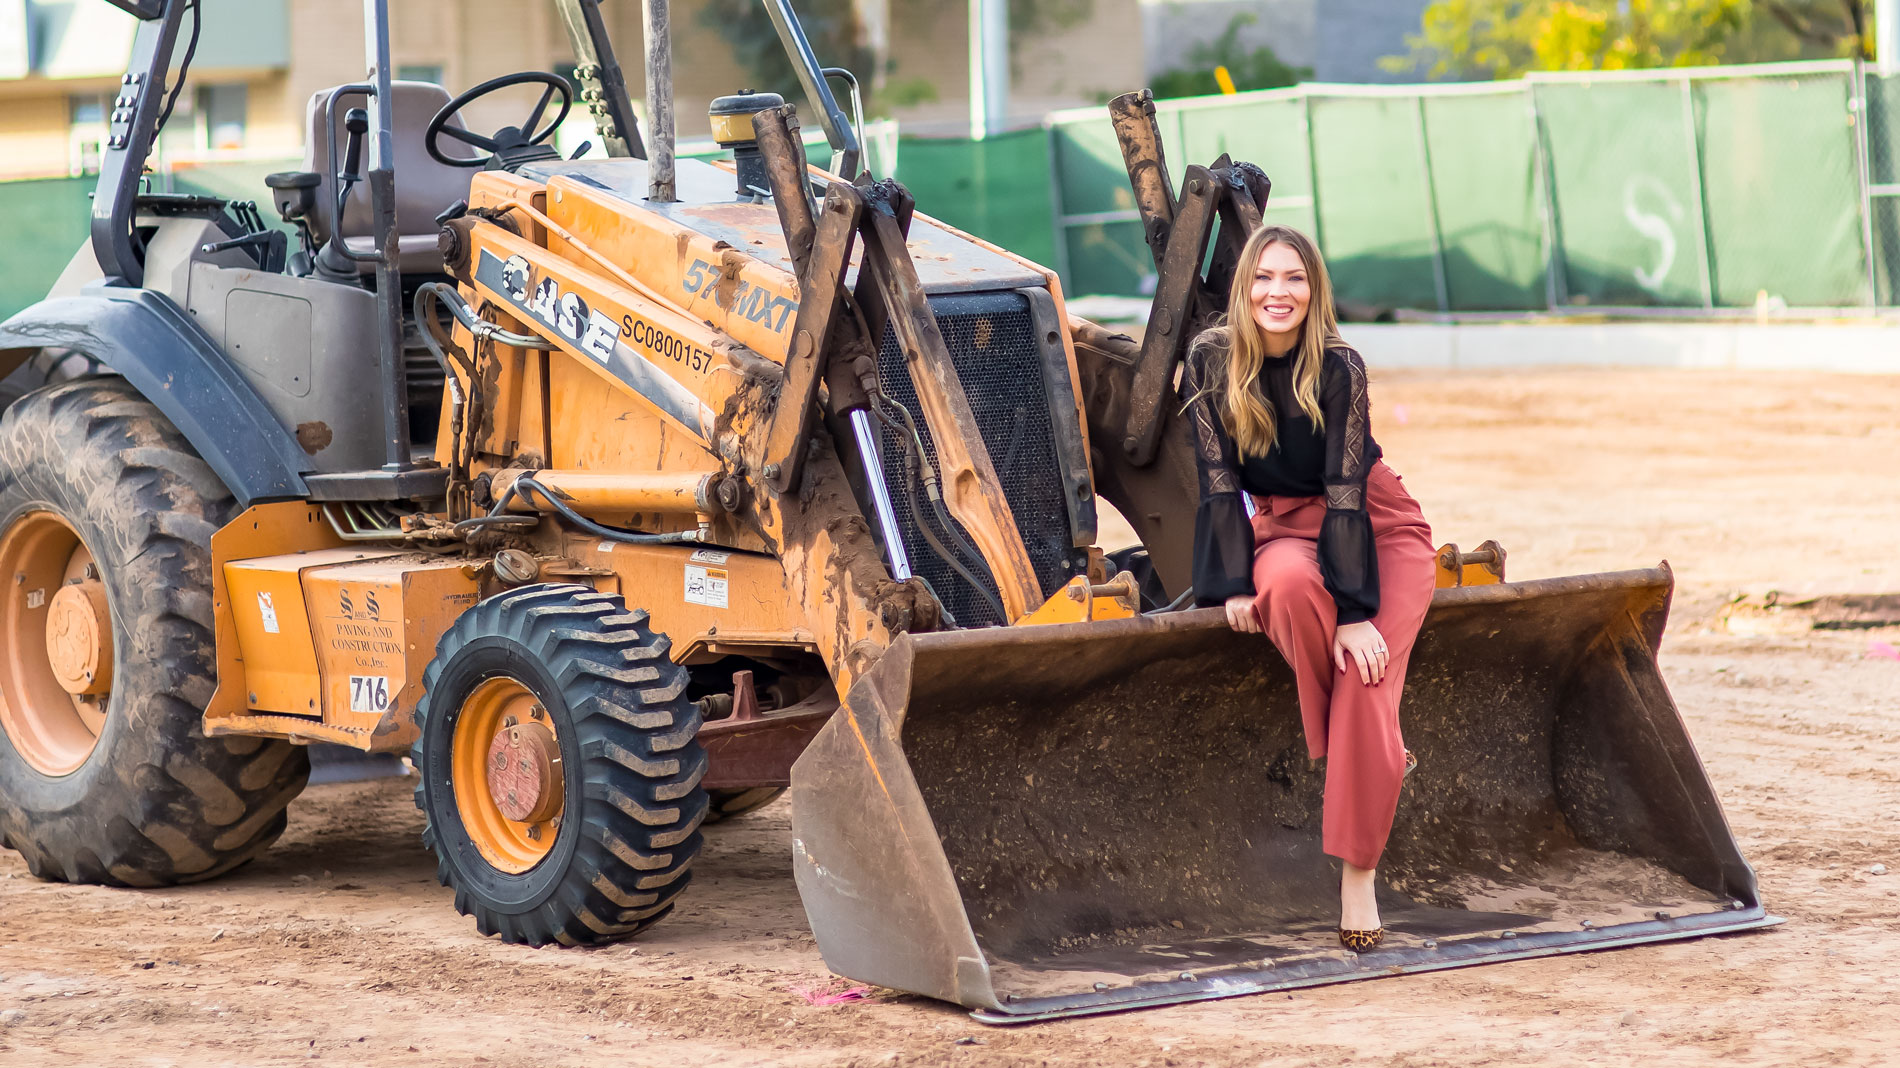 Tiffany Sharp poses with a bulldozer.